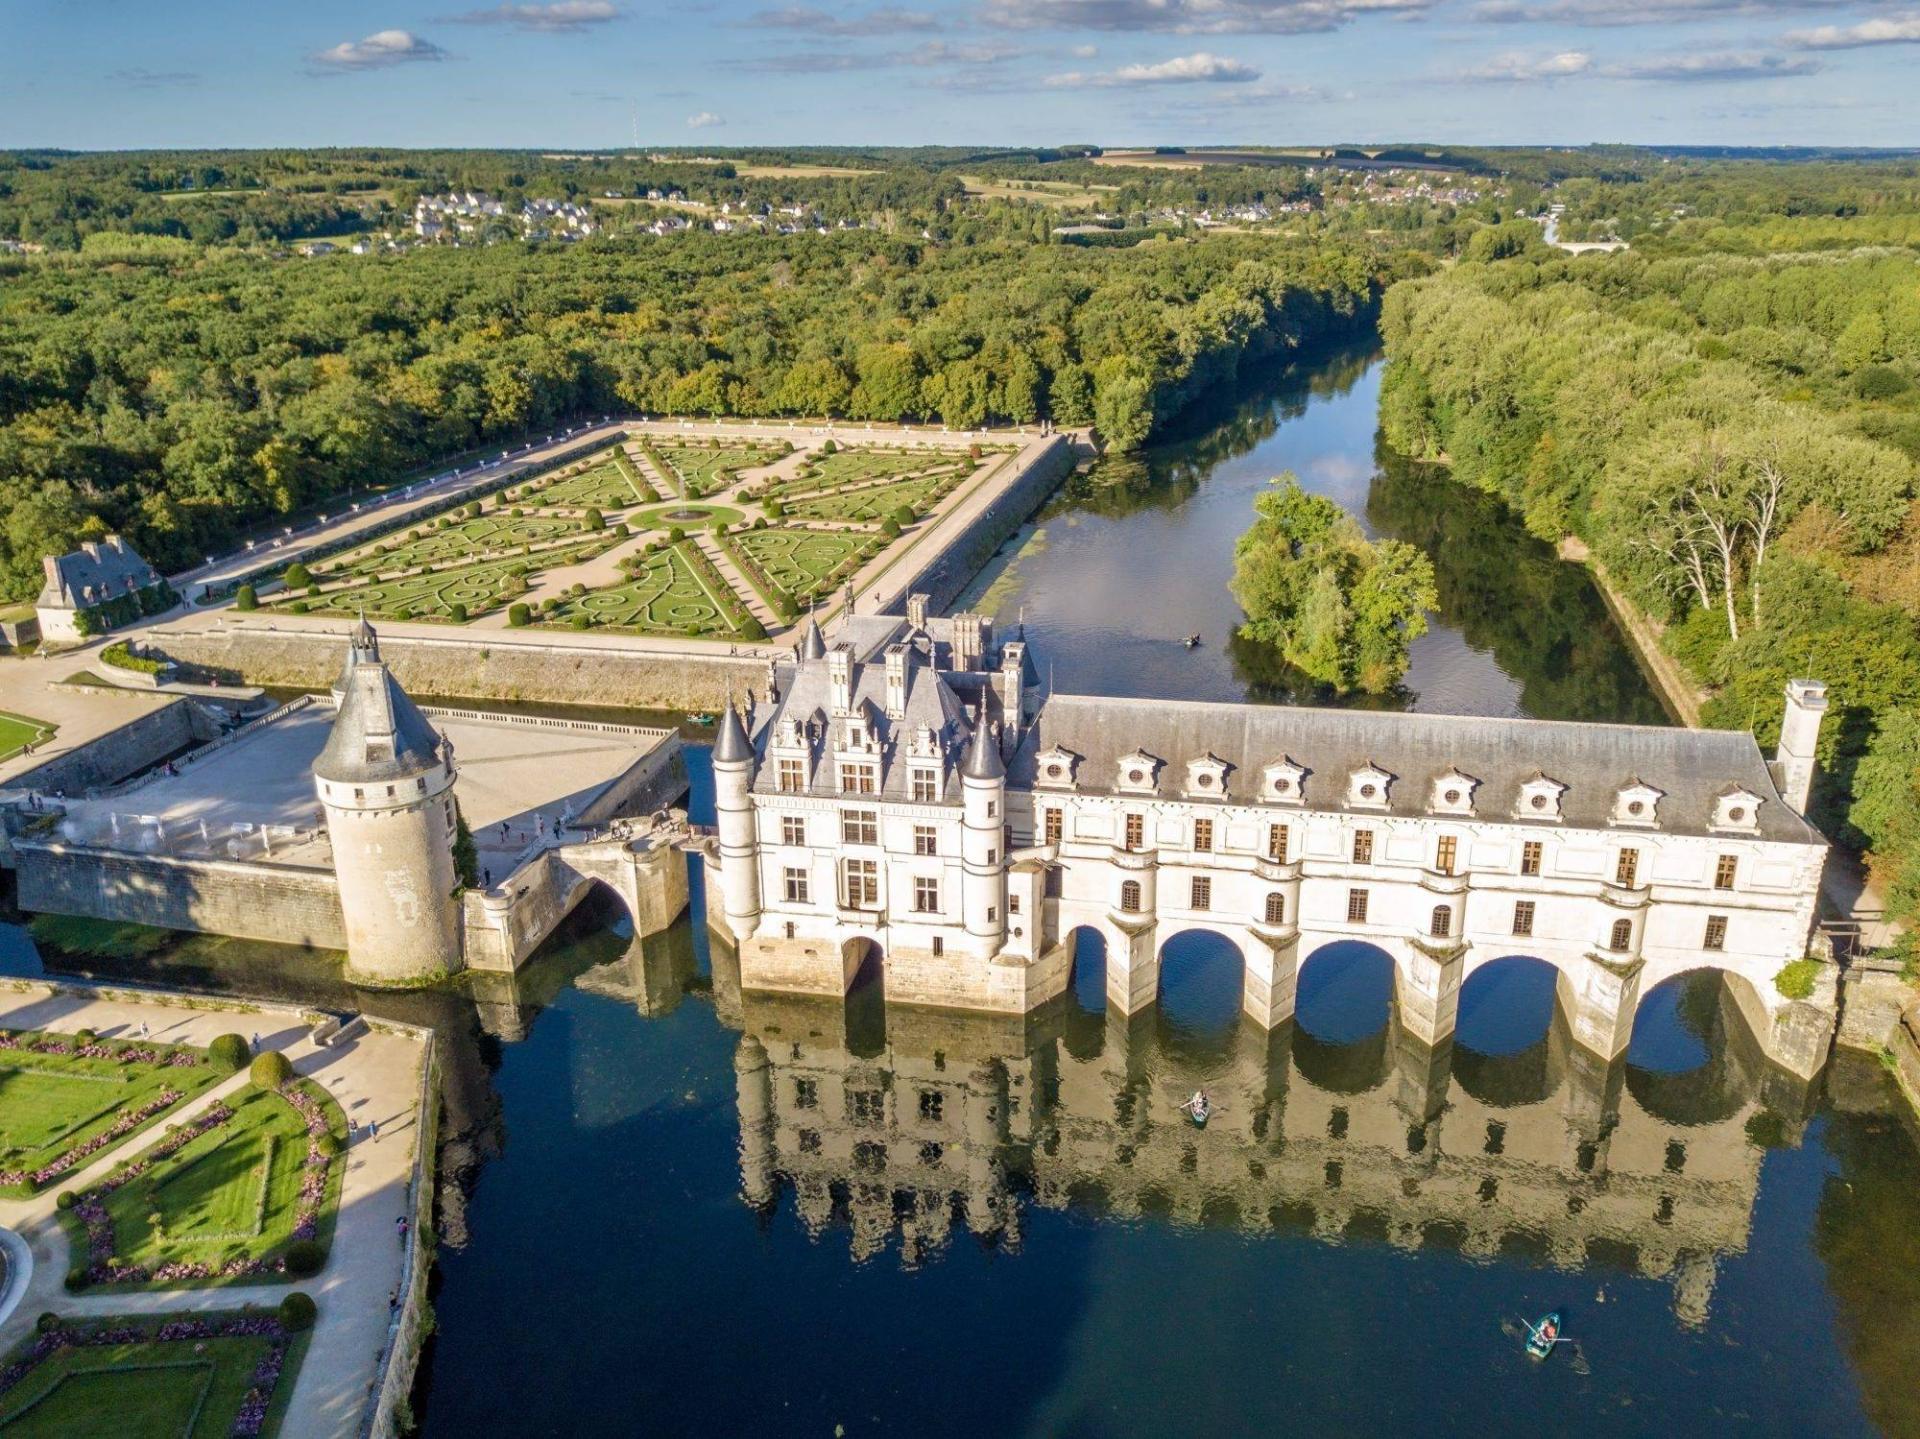 The Loire castles